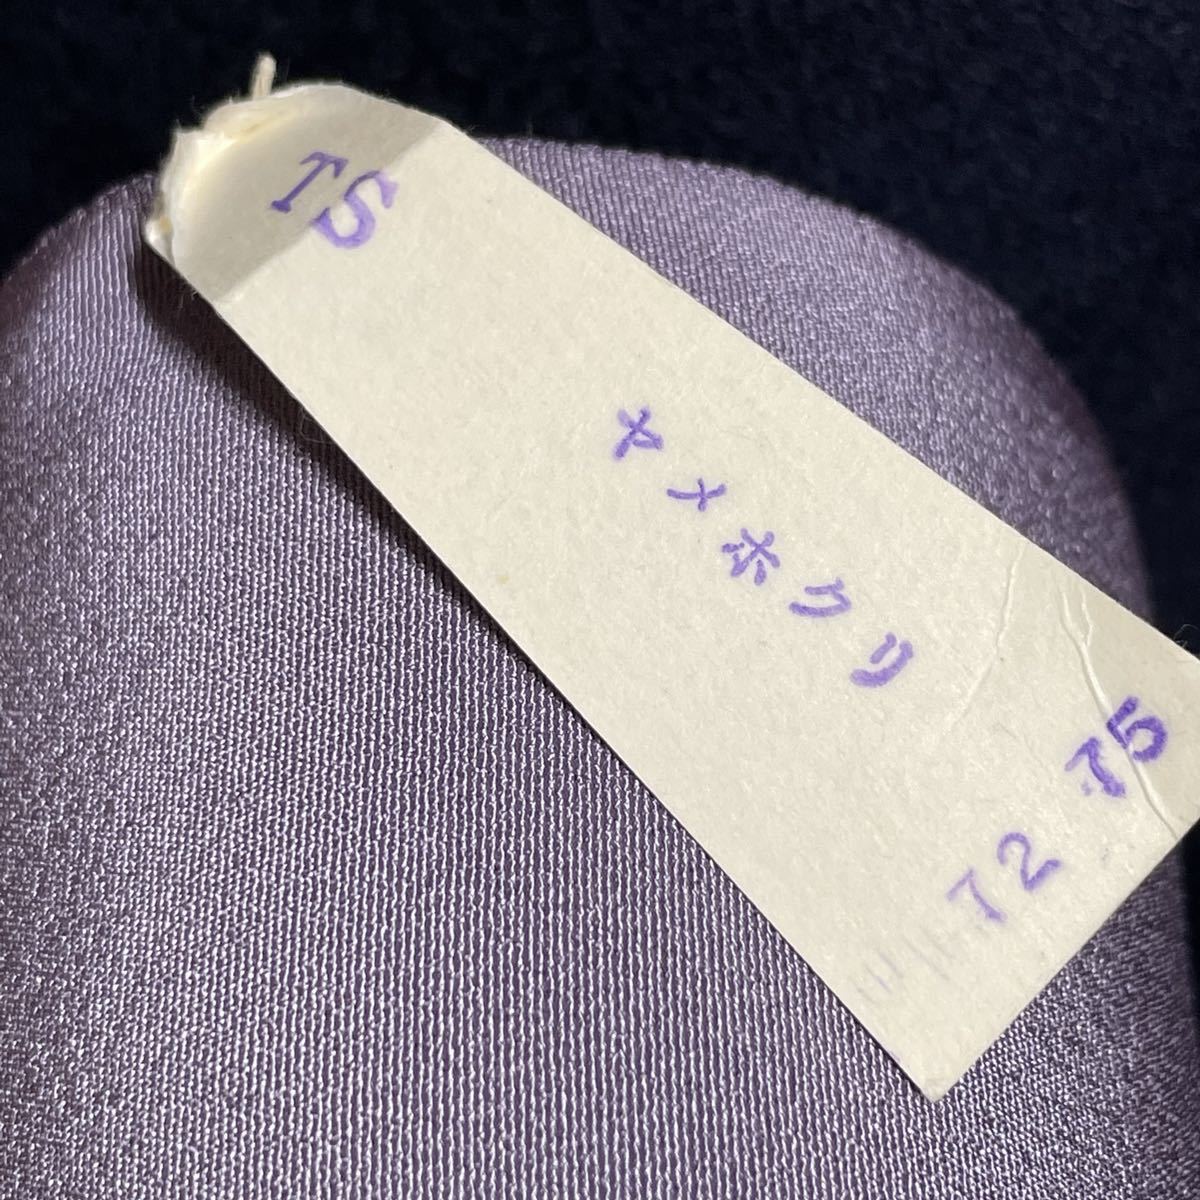 最安 【桐箱入り】三越 反物 絹 高級 着物 仕立て用 紫 藤色 未仕立て